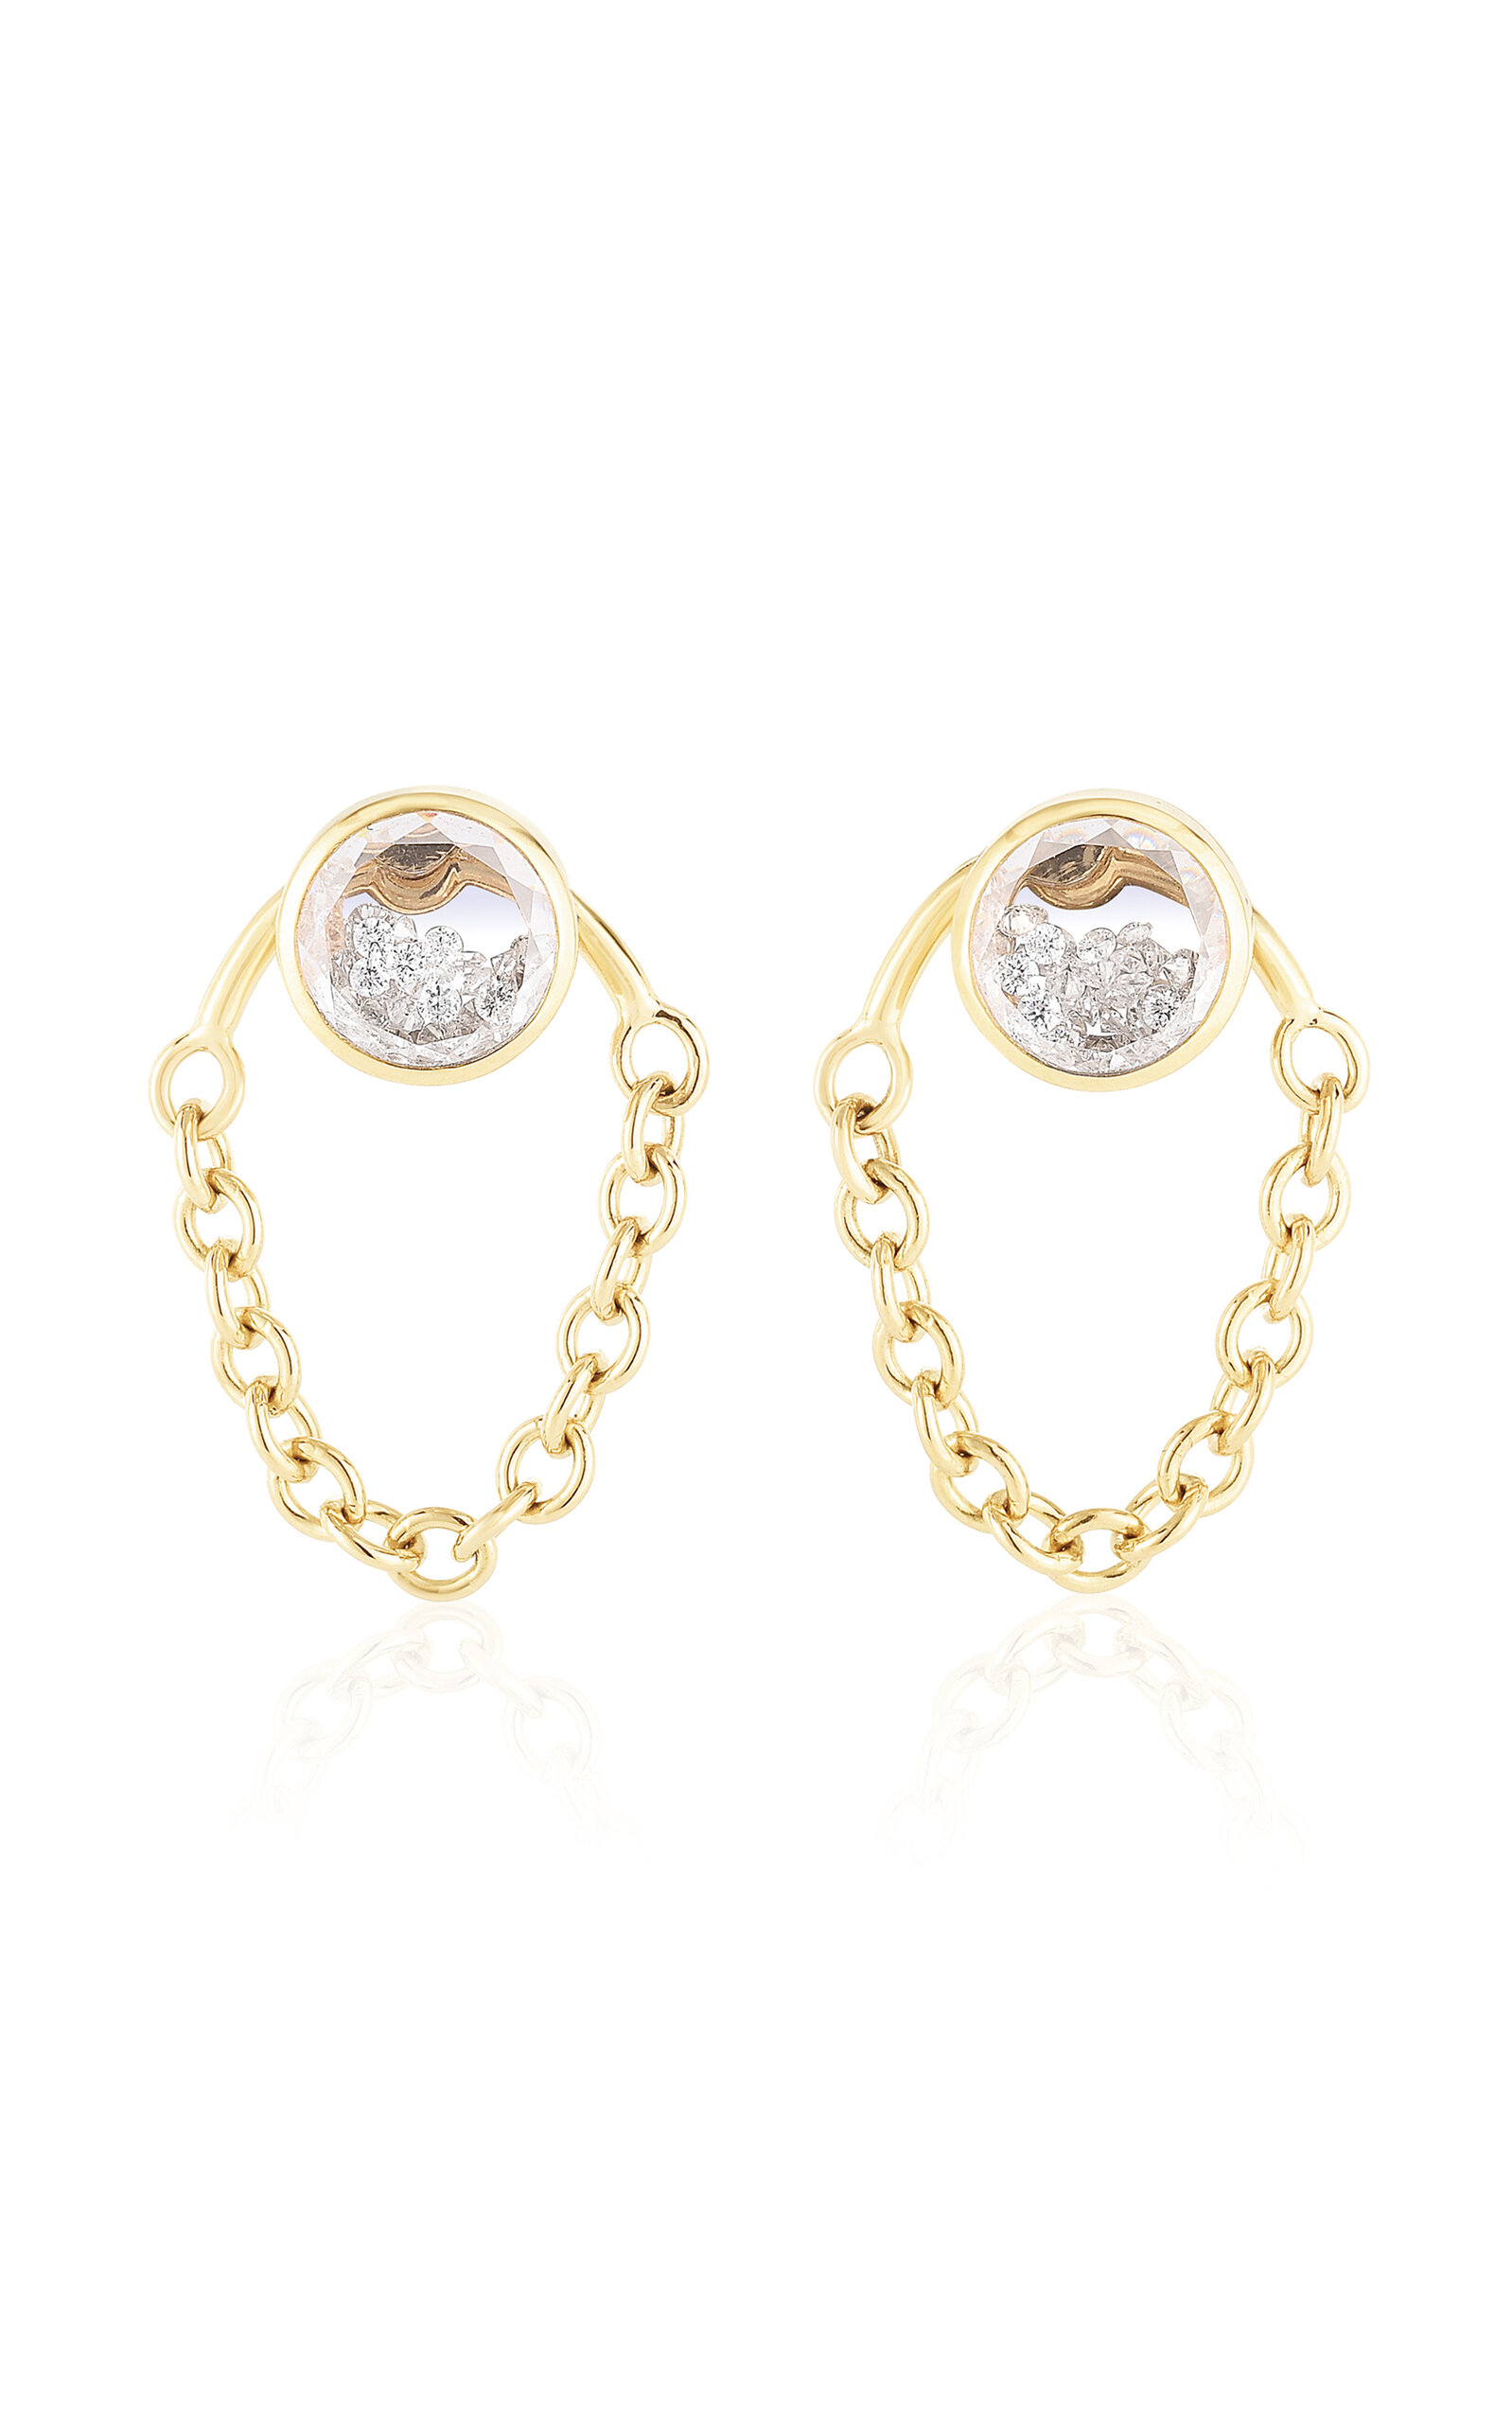 18K Gold Bamba Shaker Diamond Earrings